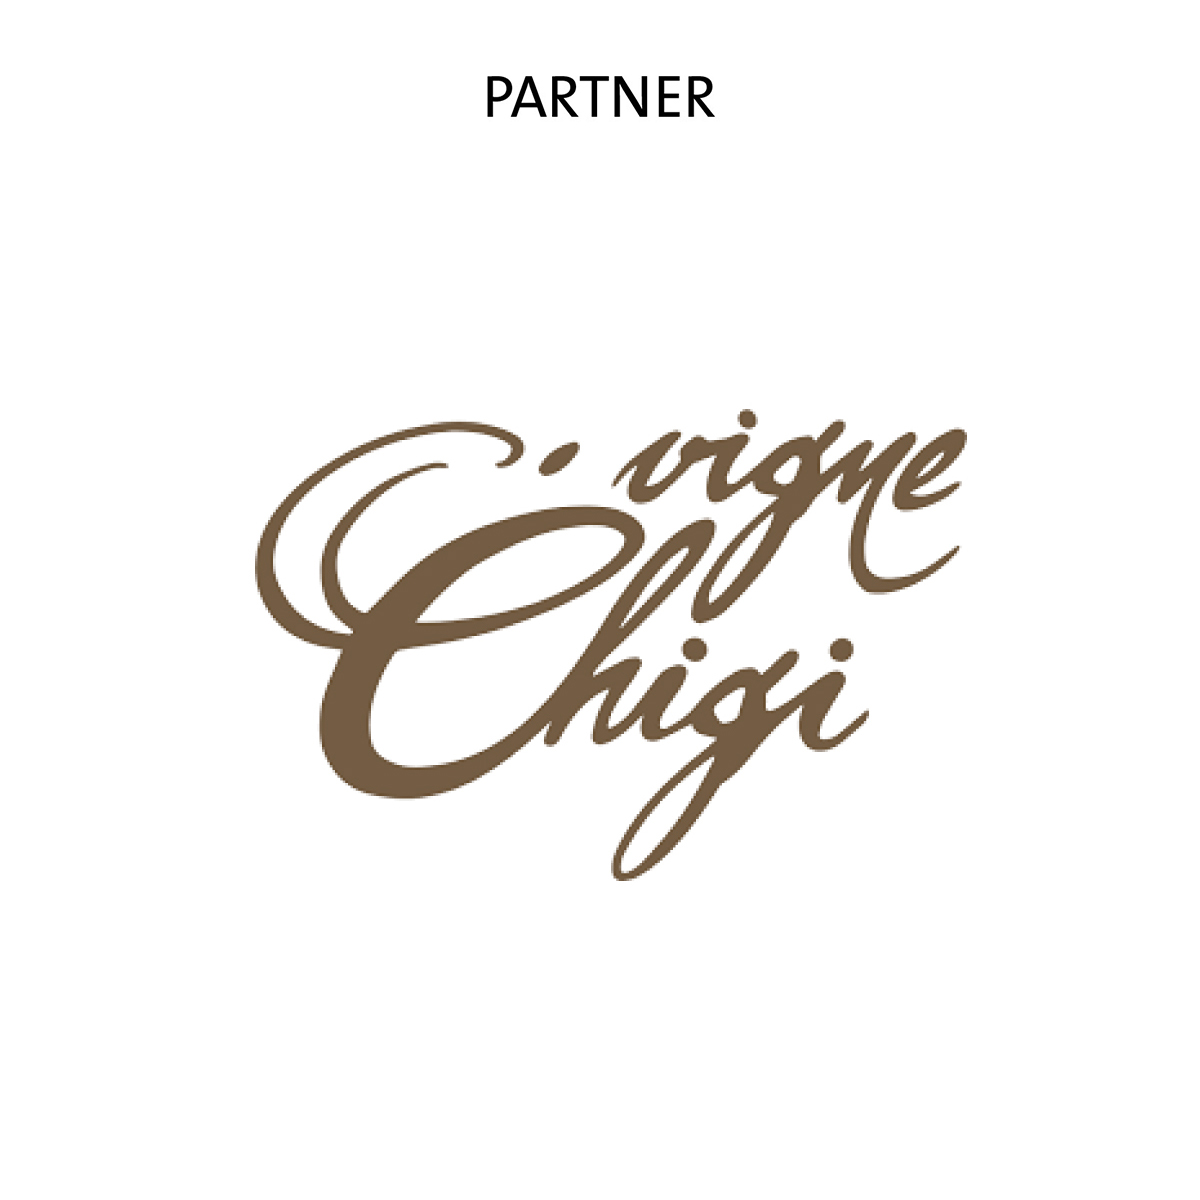 Vigne-Chigi-Partner